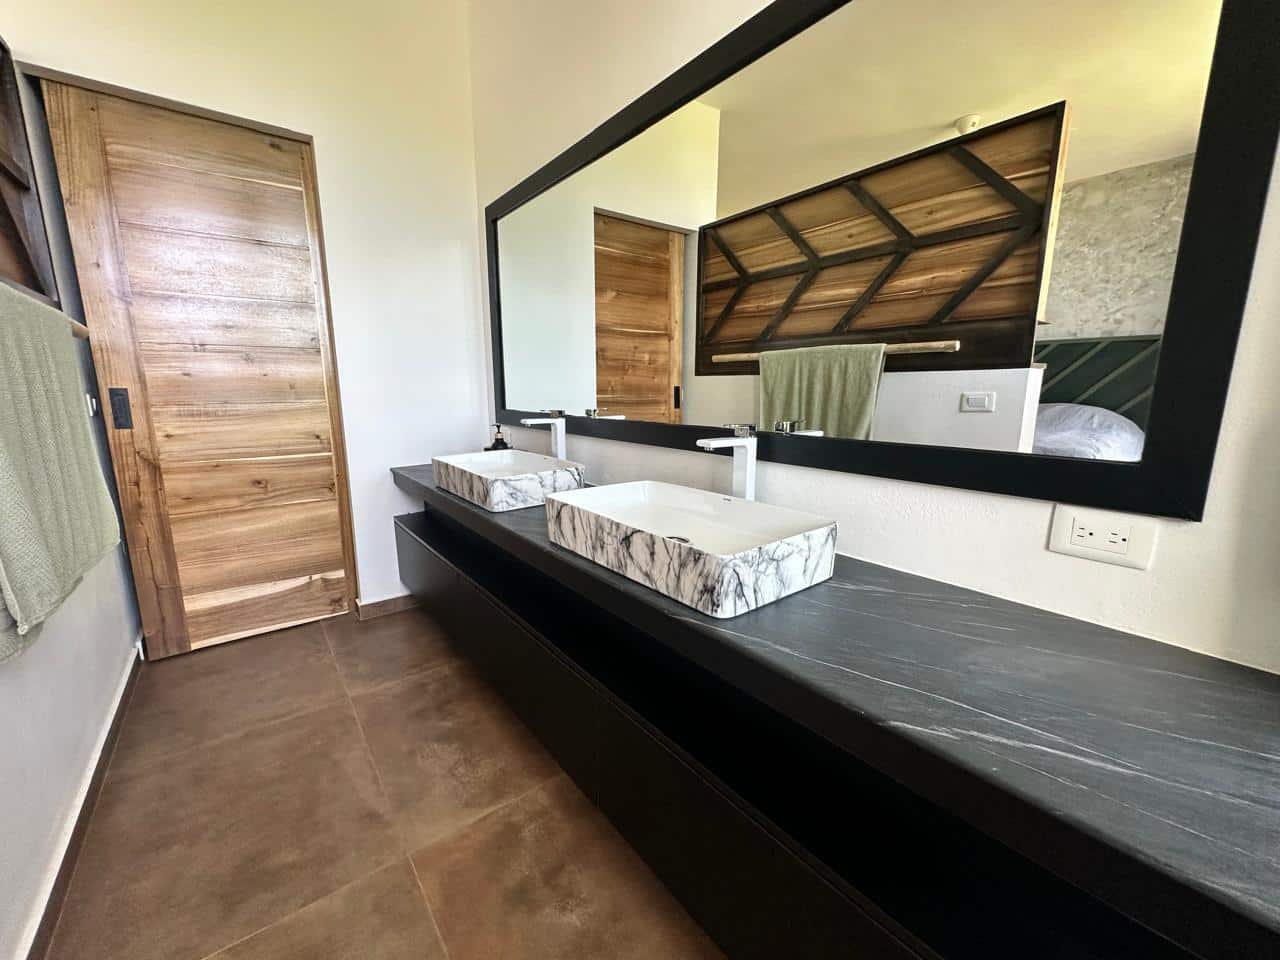 Splendid 4-bedroom villa with ocean vista - Las Terrenas Real Estate - Ocean Edge Dominican Republic (43)